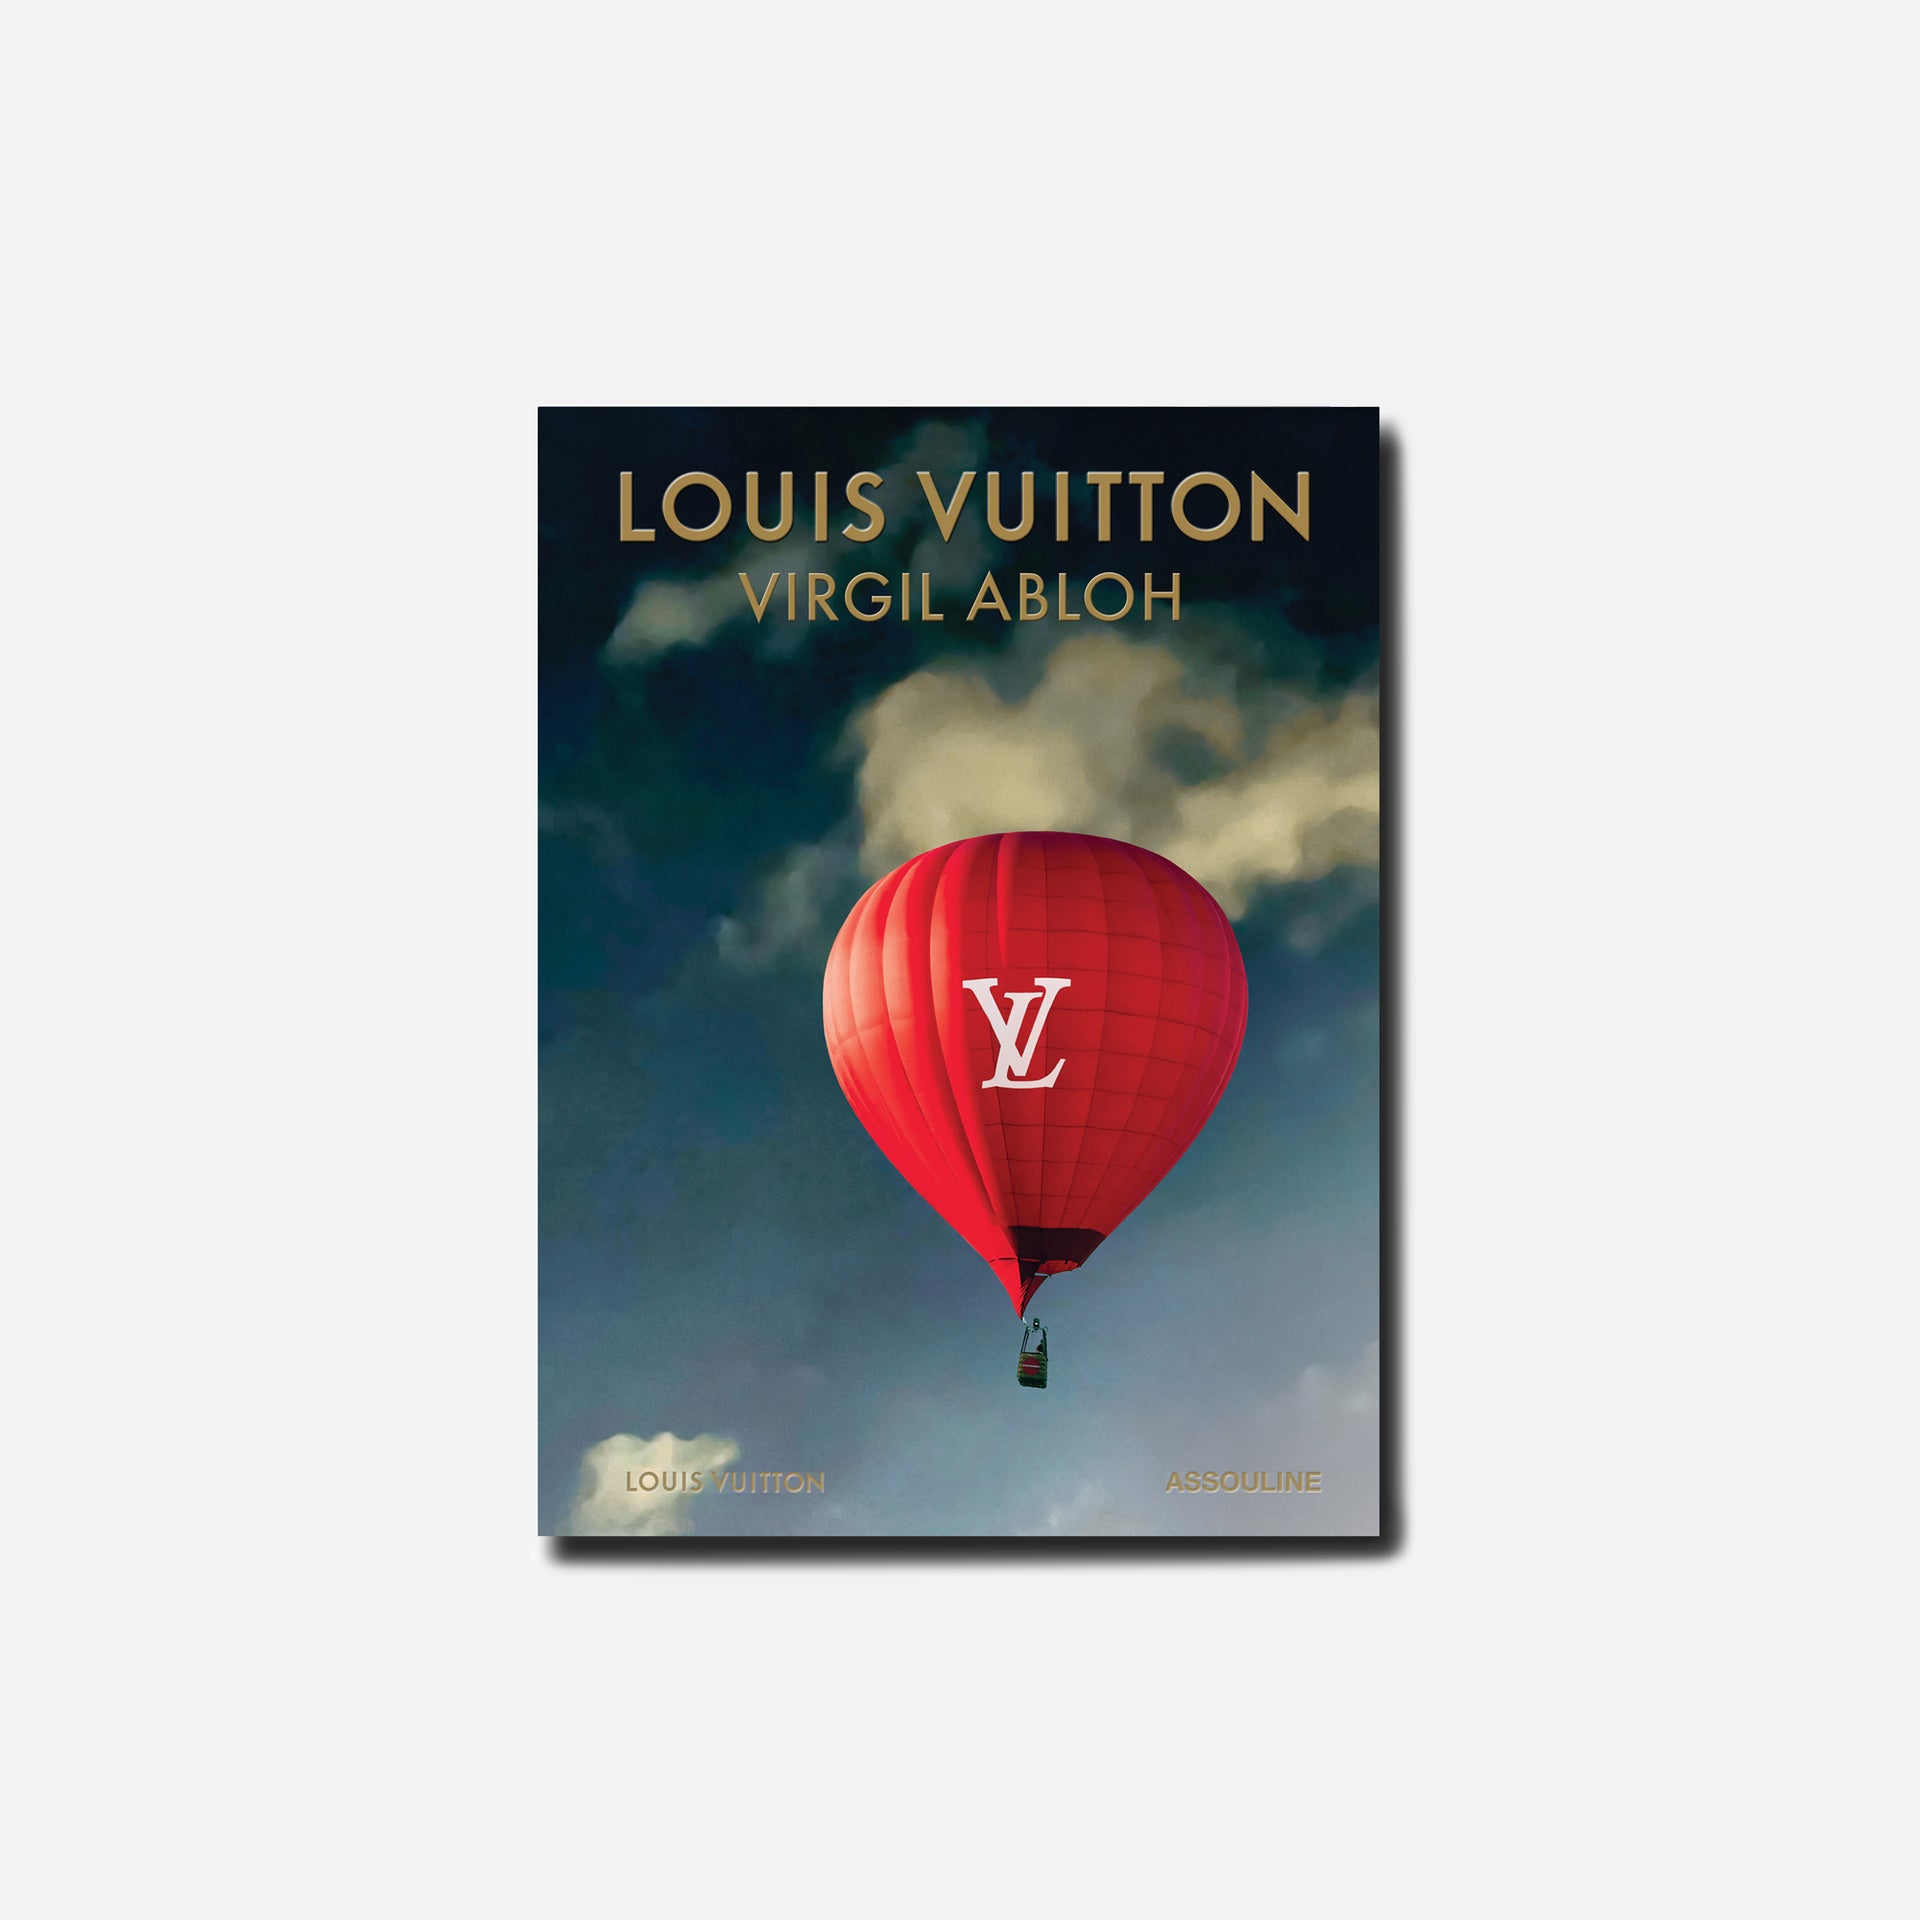 Assouline noir Louis Vuitton Virgil Abloh Balloon Cover